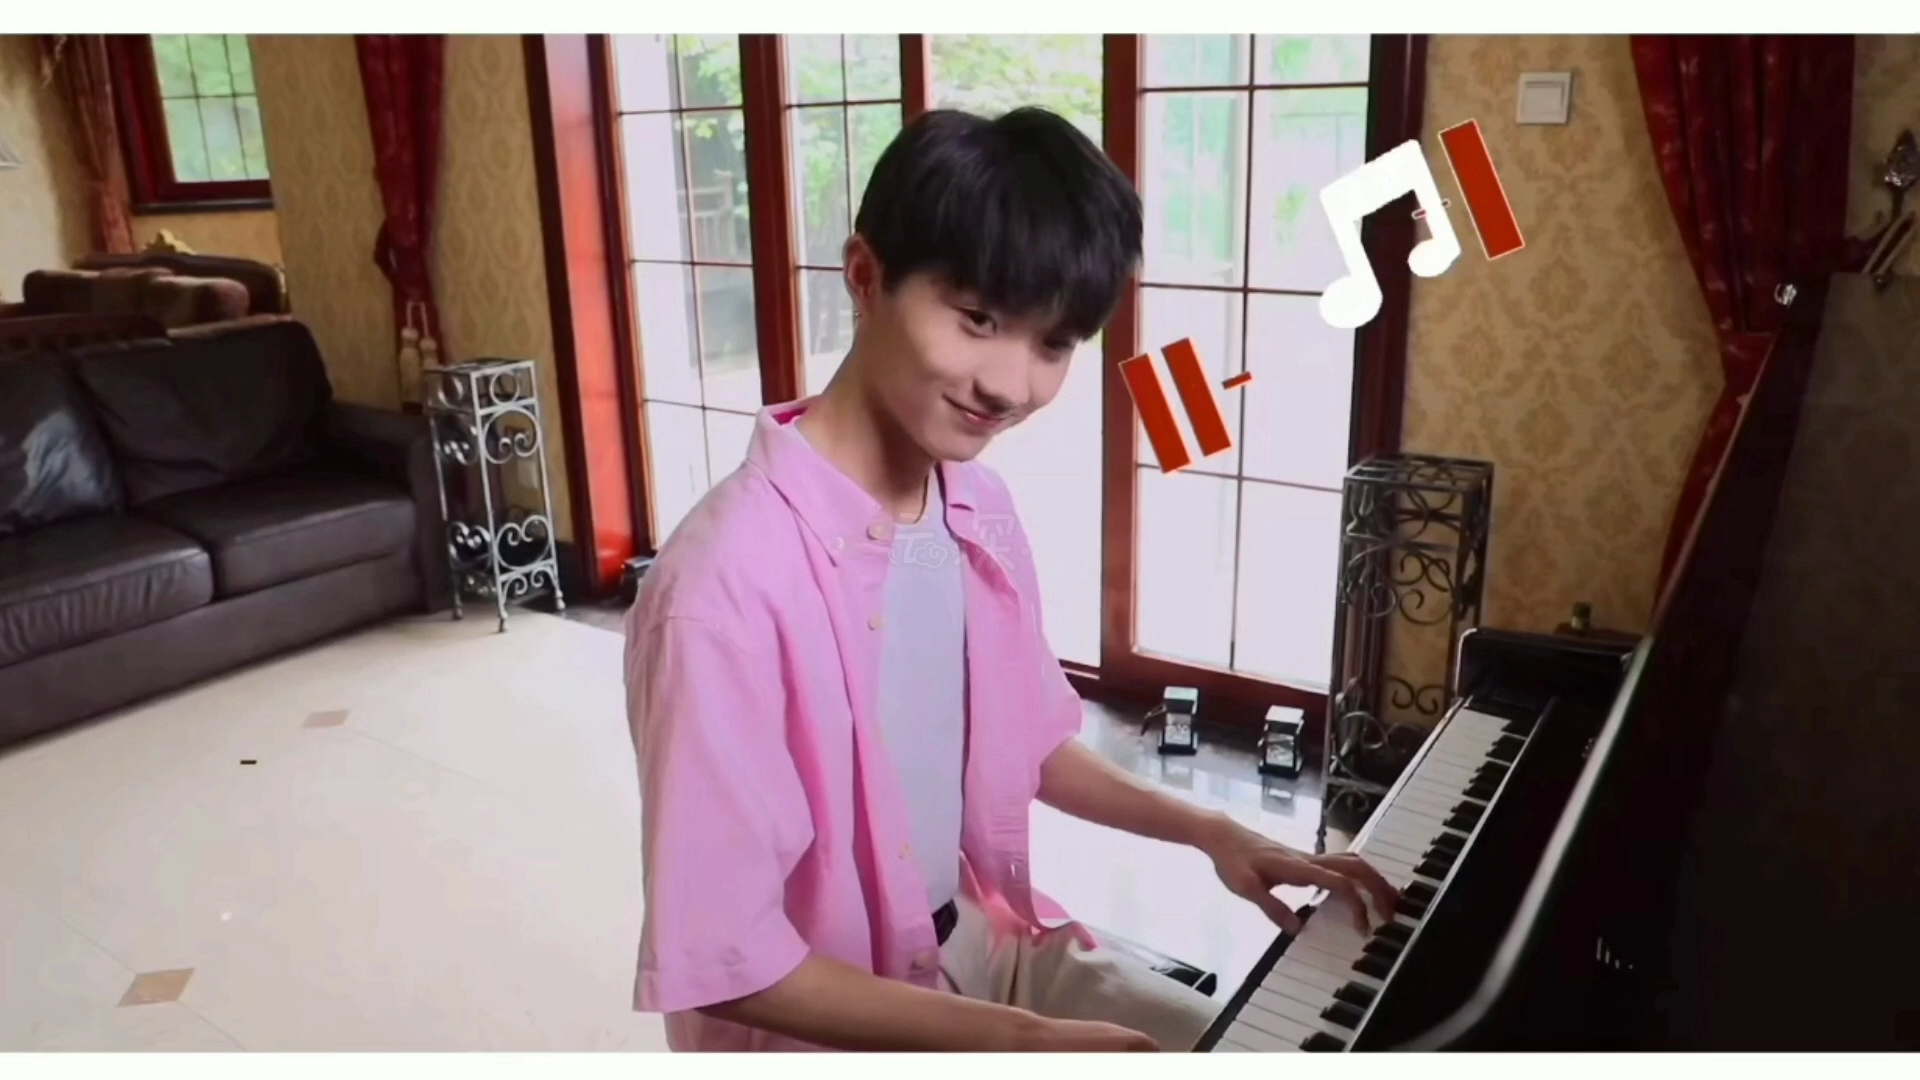 【马嘉祺】我喜欢会弹钢琴的男孩子,换个说法,我喜欢的男孩会弹钢琴